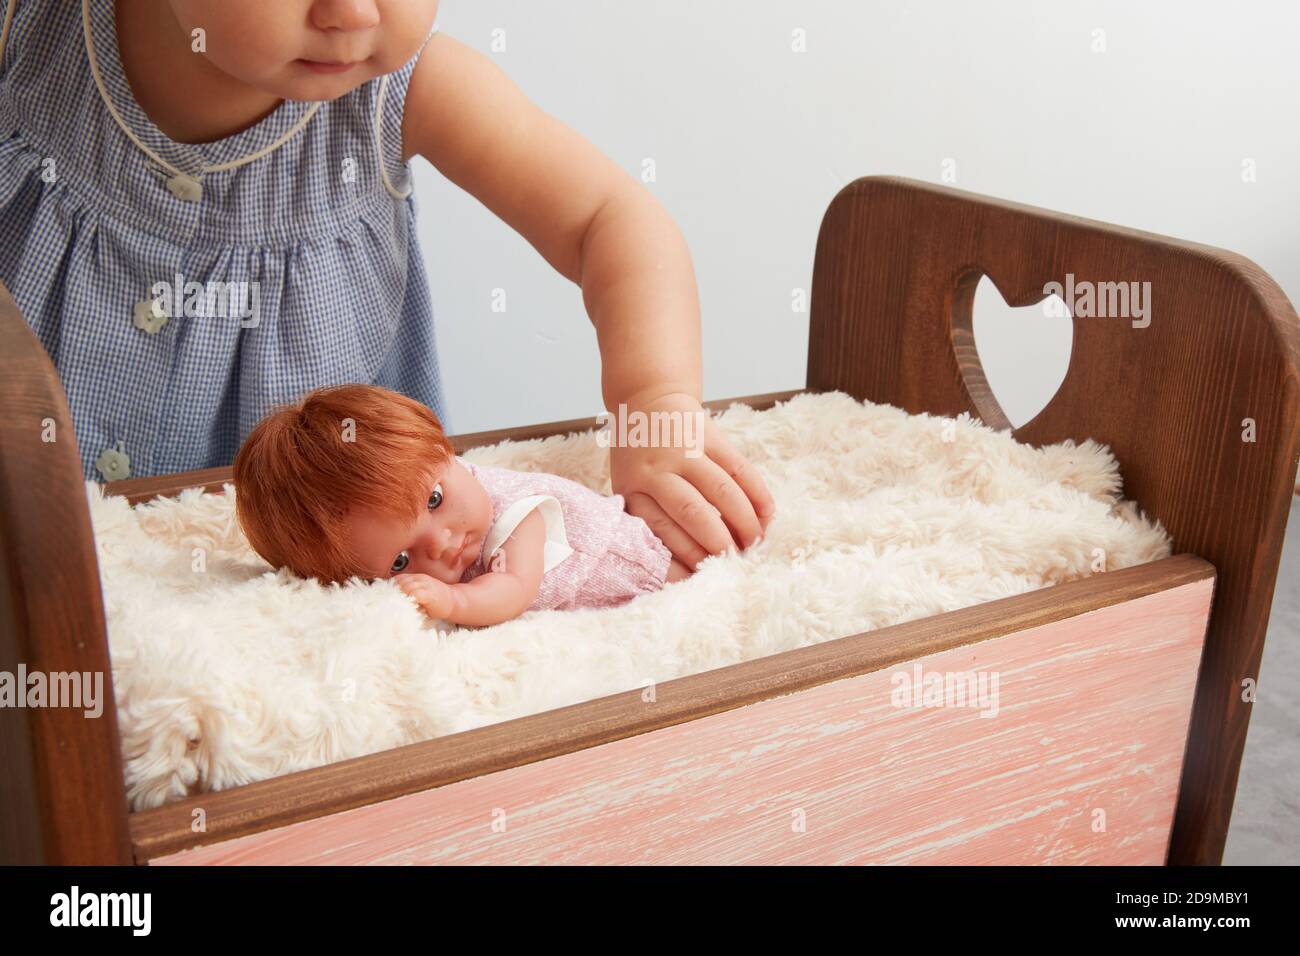 Ein gesichtsloses Mädchen spielt mit einer Puppe. Ins Bett legen. Stockfoto